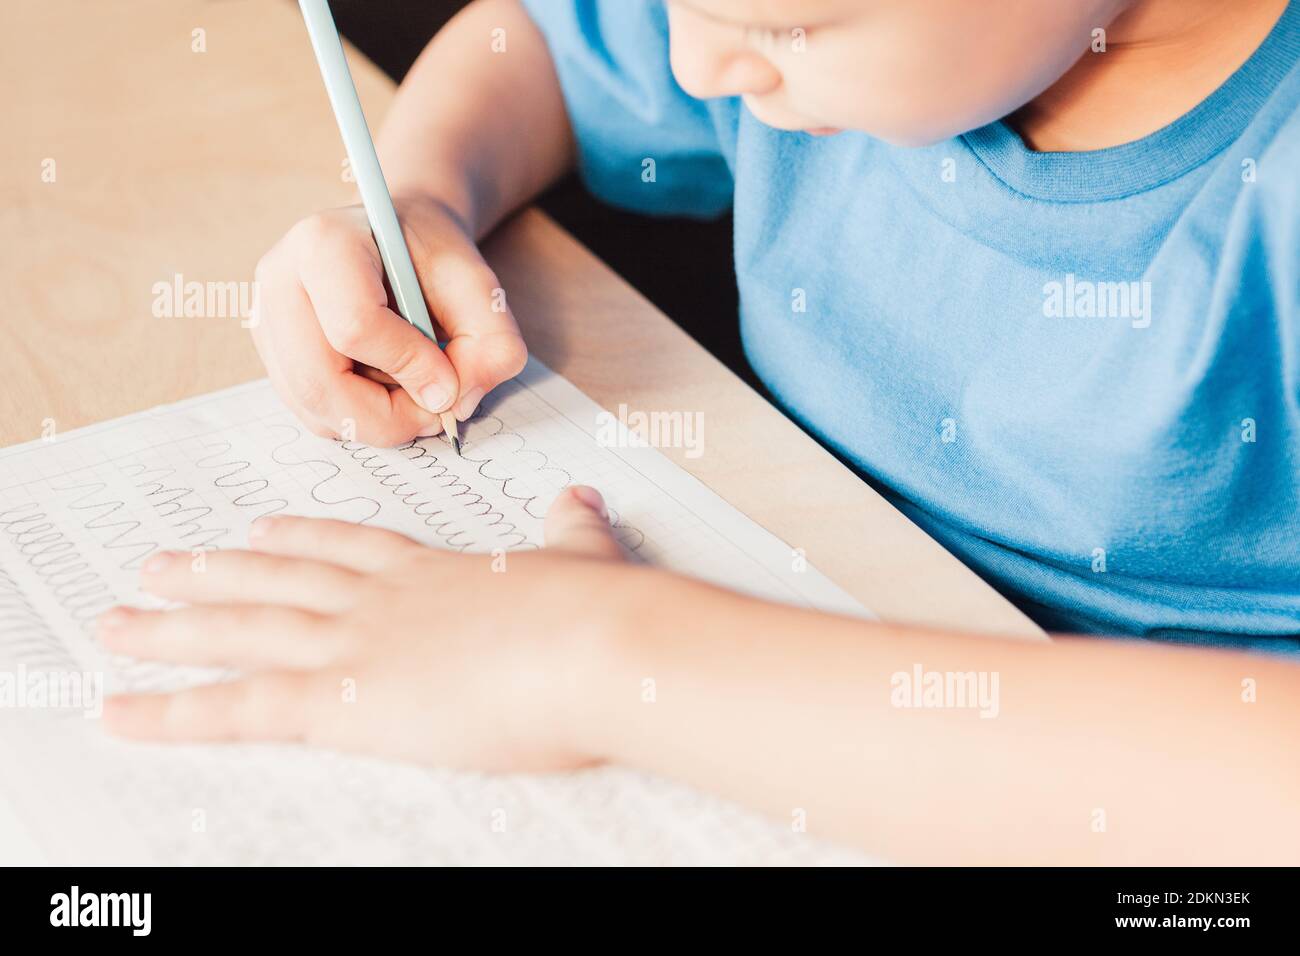 Schule Kind tun schriftlich Aufgabe zu Hause. Kind zeichnet Linien mit Bleistift. Vorschreiben Übung, um die Hand für Schreiben Briefe vorzubereiten Stockfoto